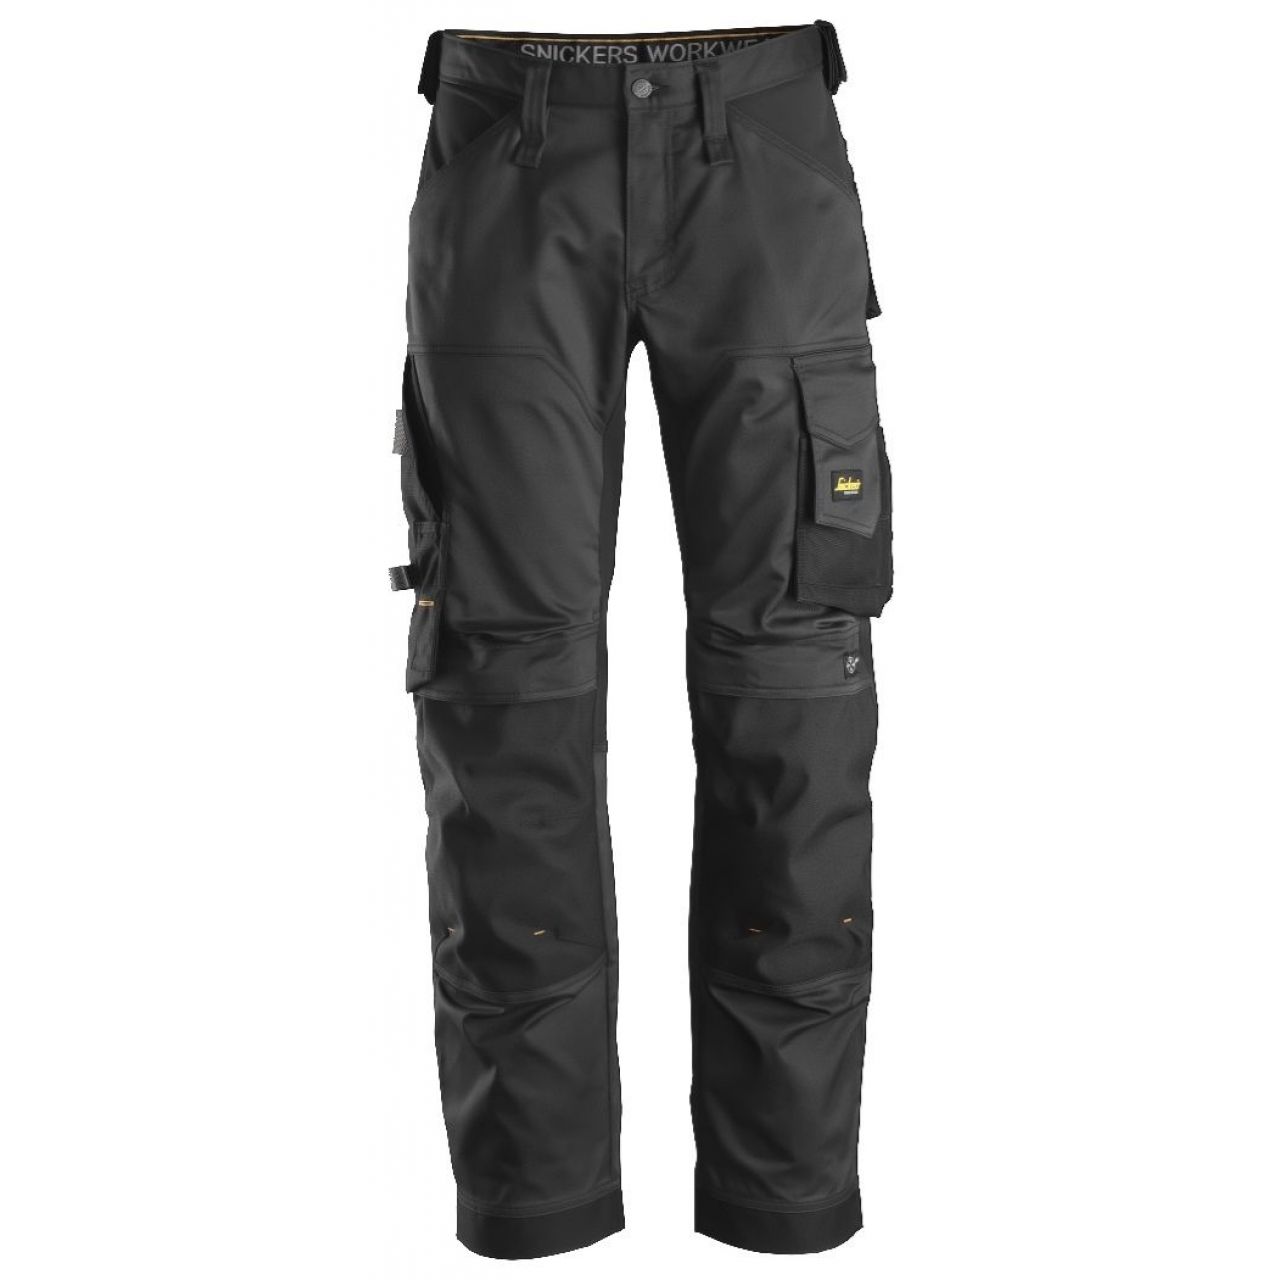 Pantalon elastico ajuste holgado AllroundWork negro talla 046